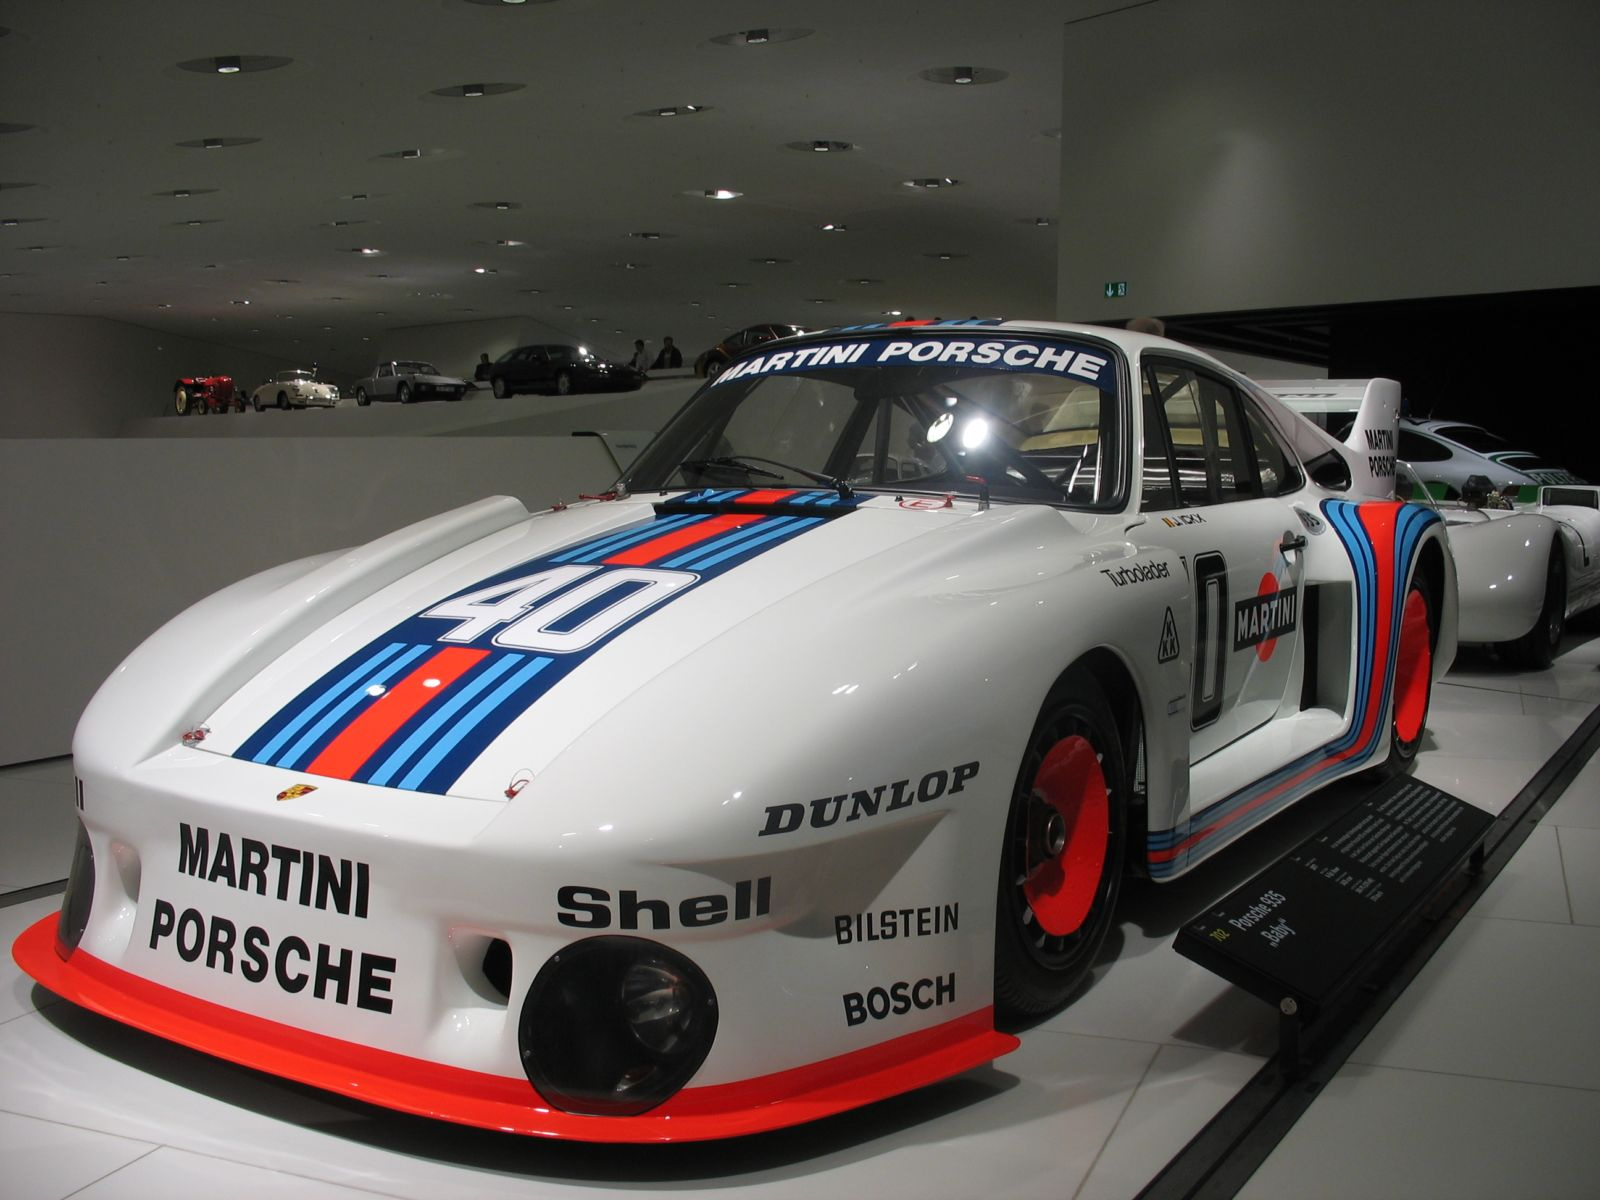 Porsche "baby" 935